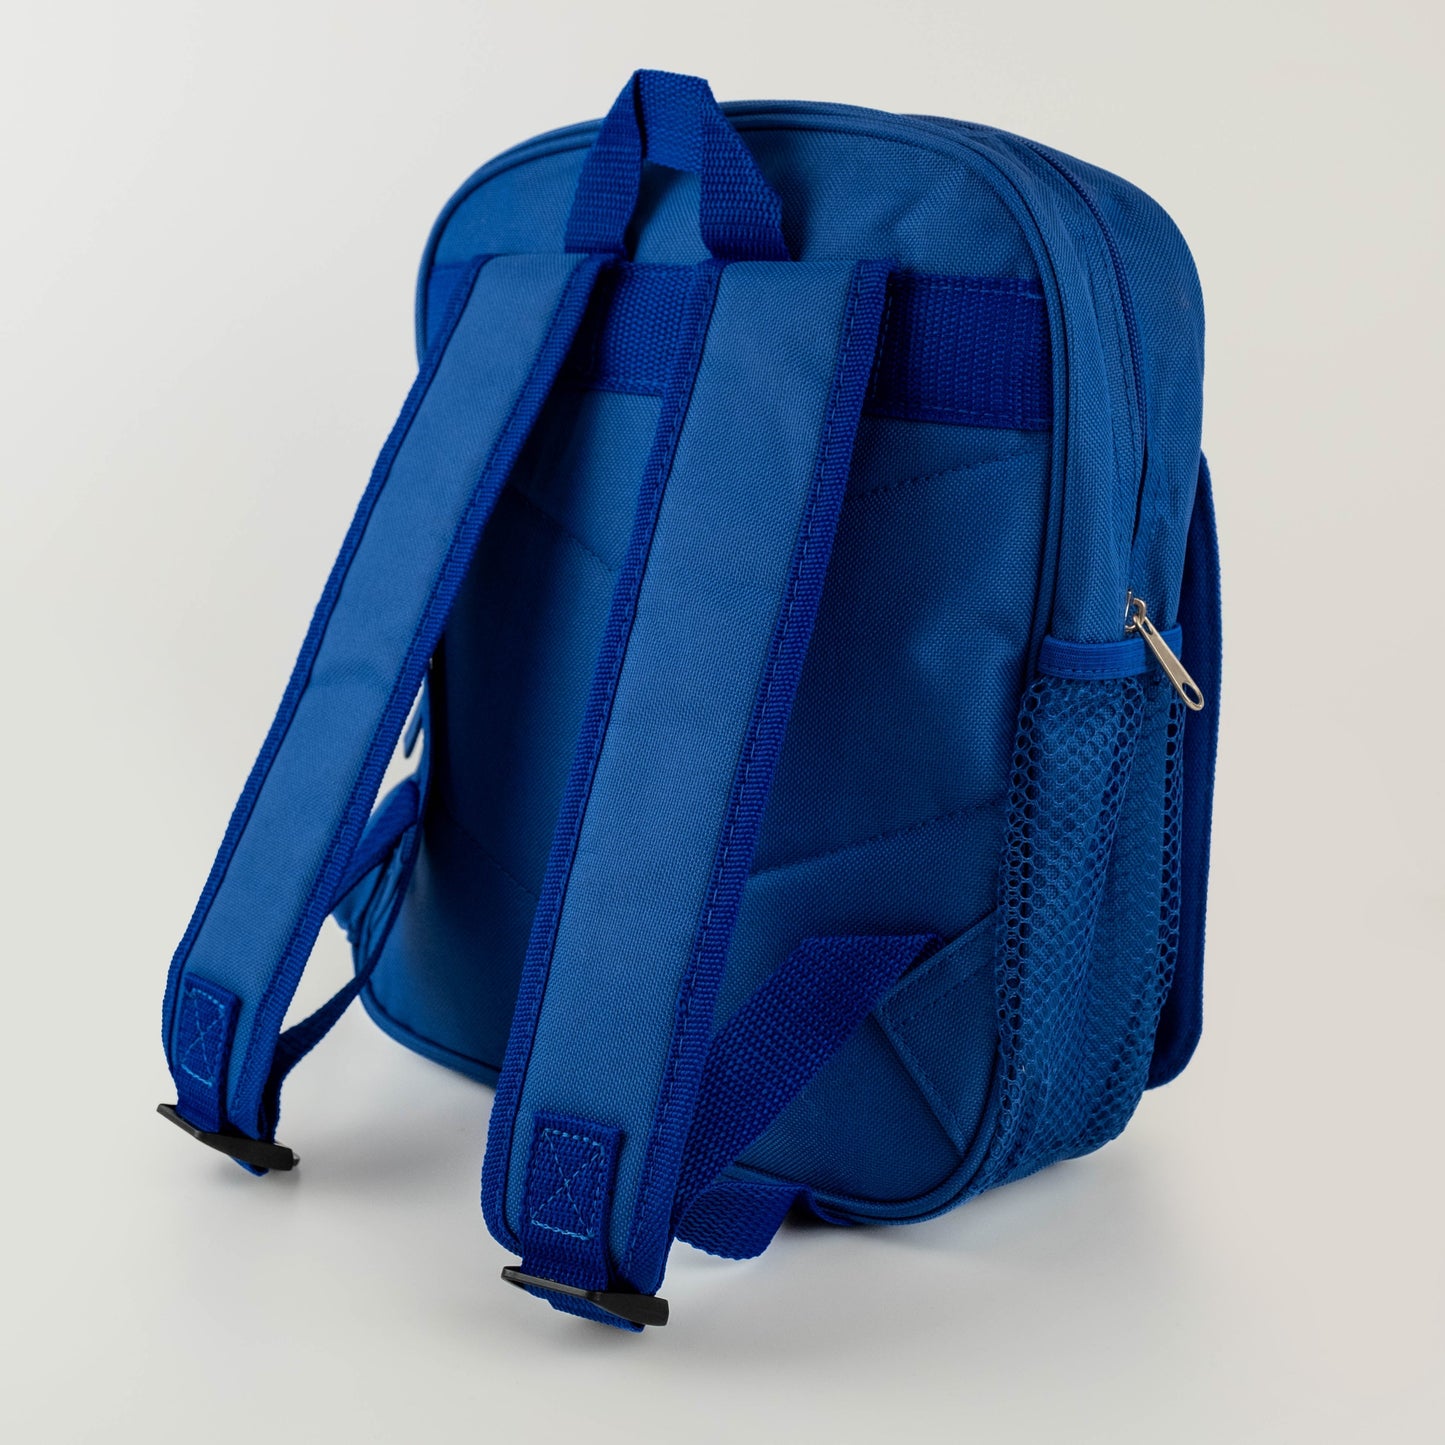 Children’s Personalised Backpack - Boho Dinosaur Design - Neutral